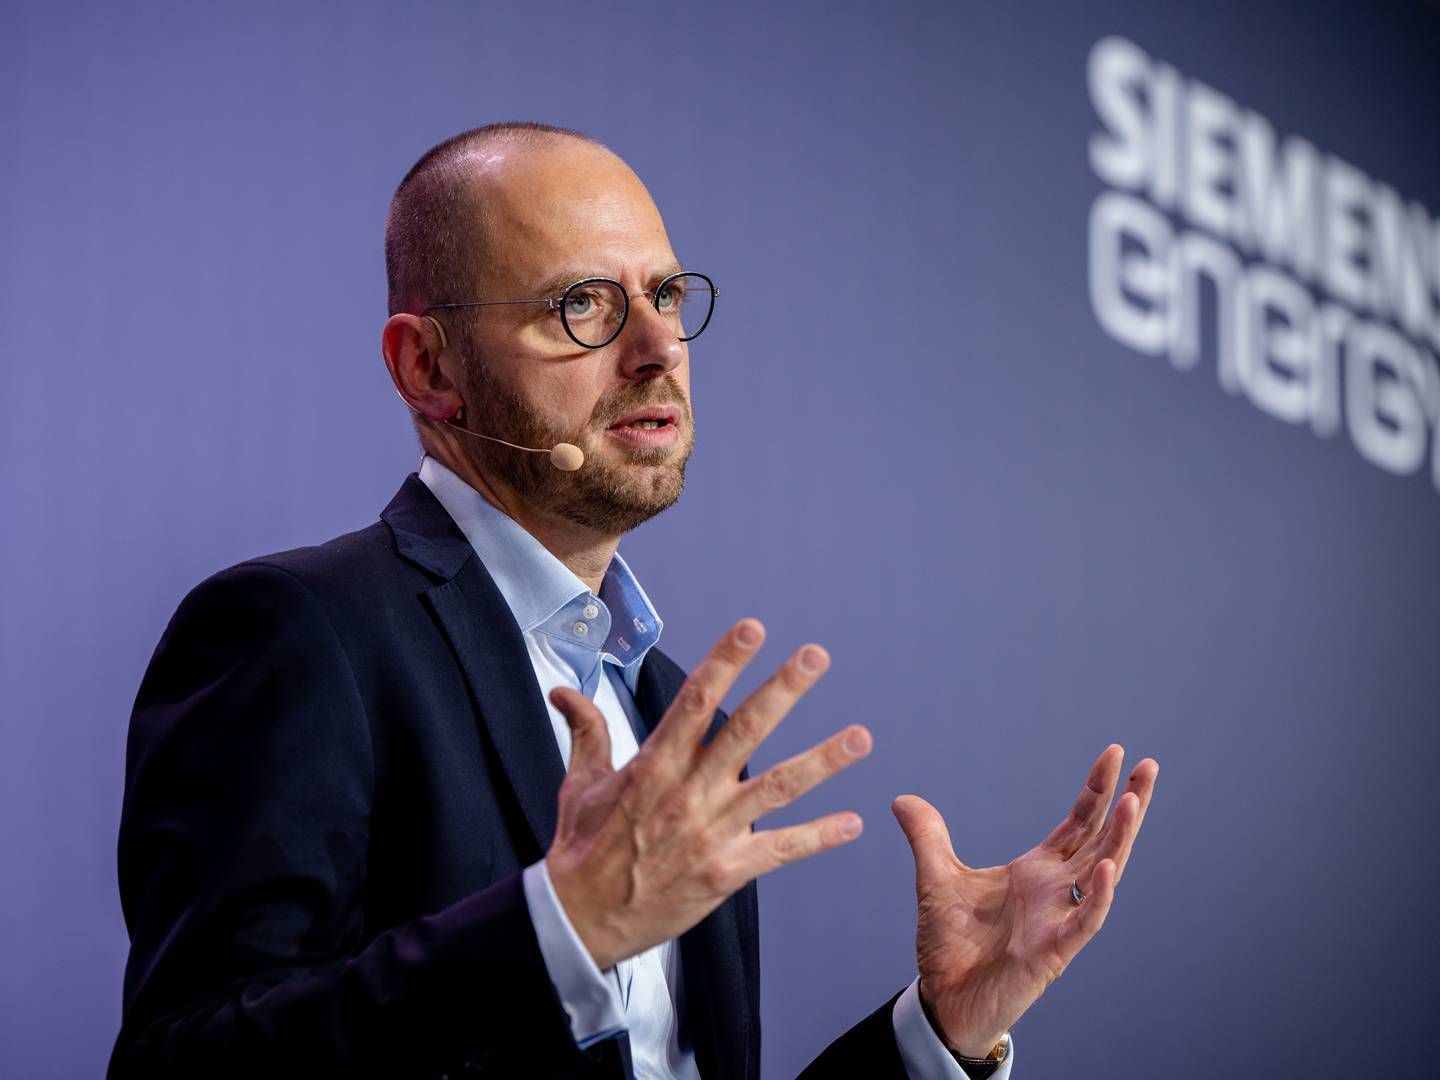 Fremgangen er allerede at se hos Siemens Gamesa, lyder det fra Siemens Energy-topchef Christian Bruch. Men lønsomheden er endnu et stykke væk. | Foto: Siemens Energy